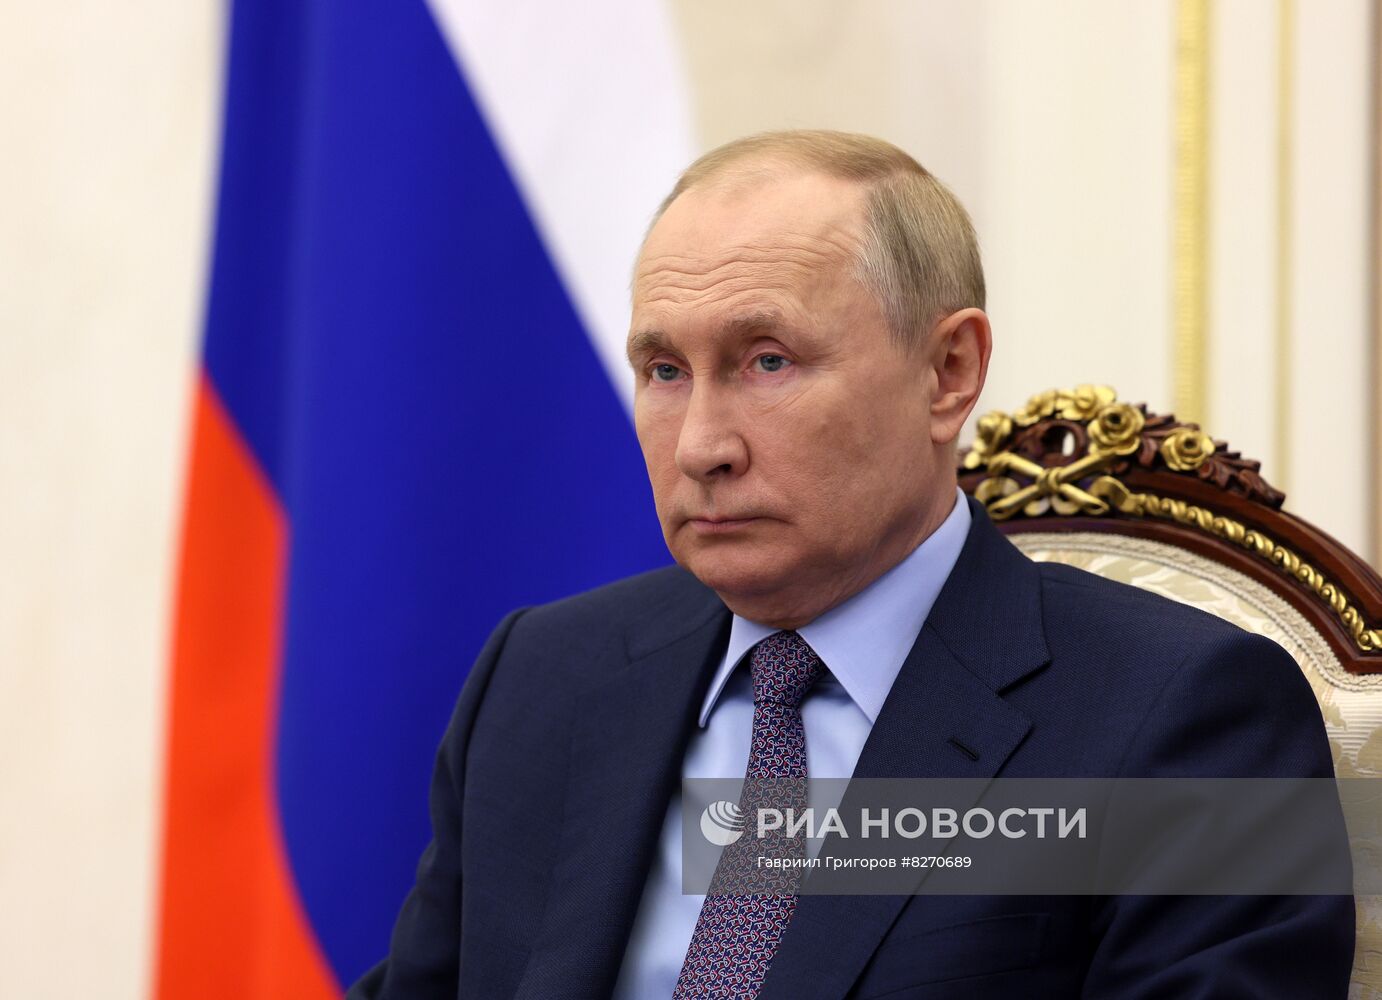 Президент РФ В. Путин принял участие в церемонии открытия автомобильного движения на новых участках транспортной сети в ряде регионов